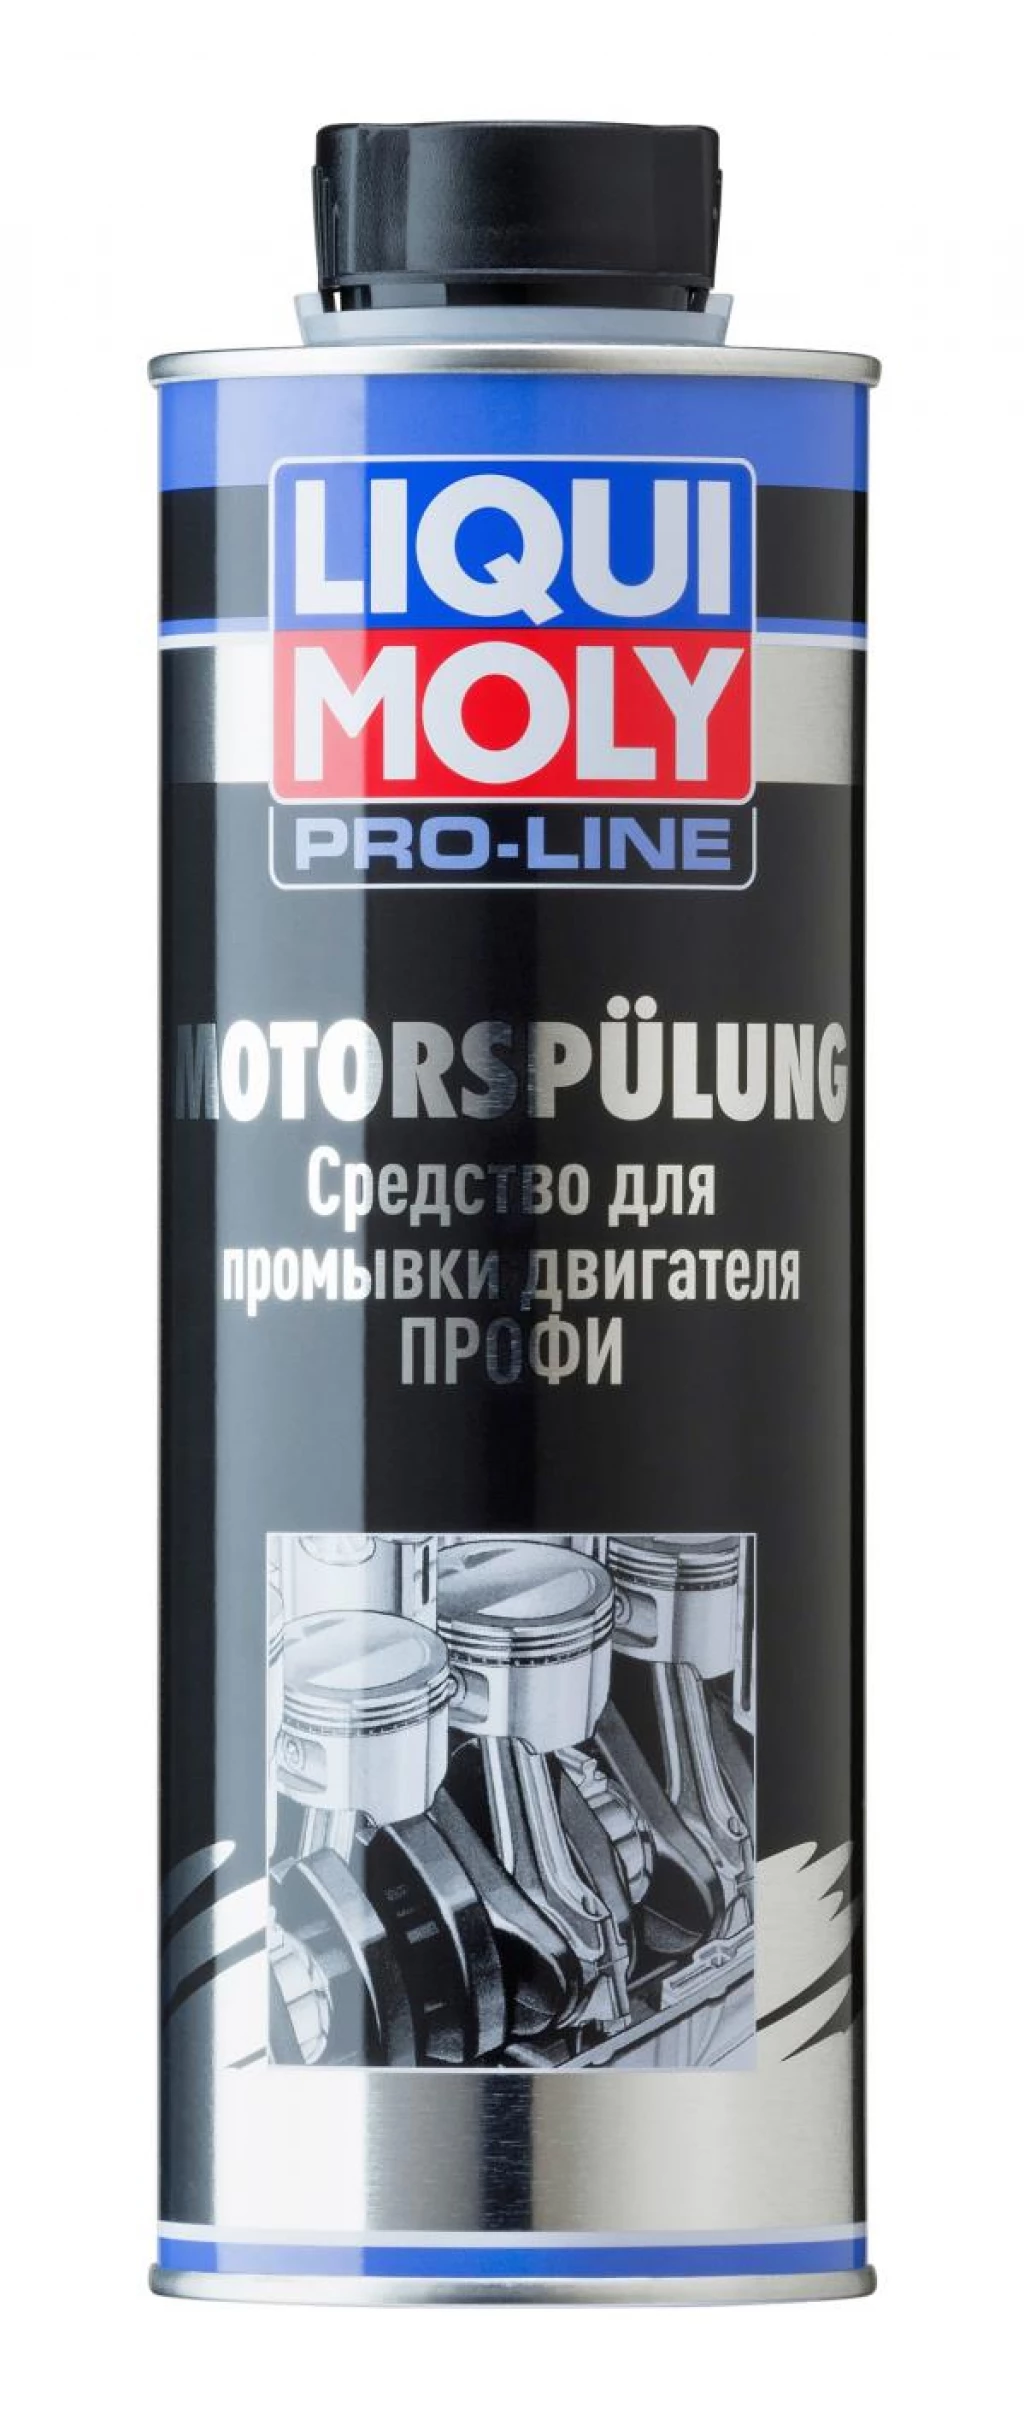 Промывка для двигателя Liqui Moly Pro-Line Motorspulung 500 мл